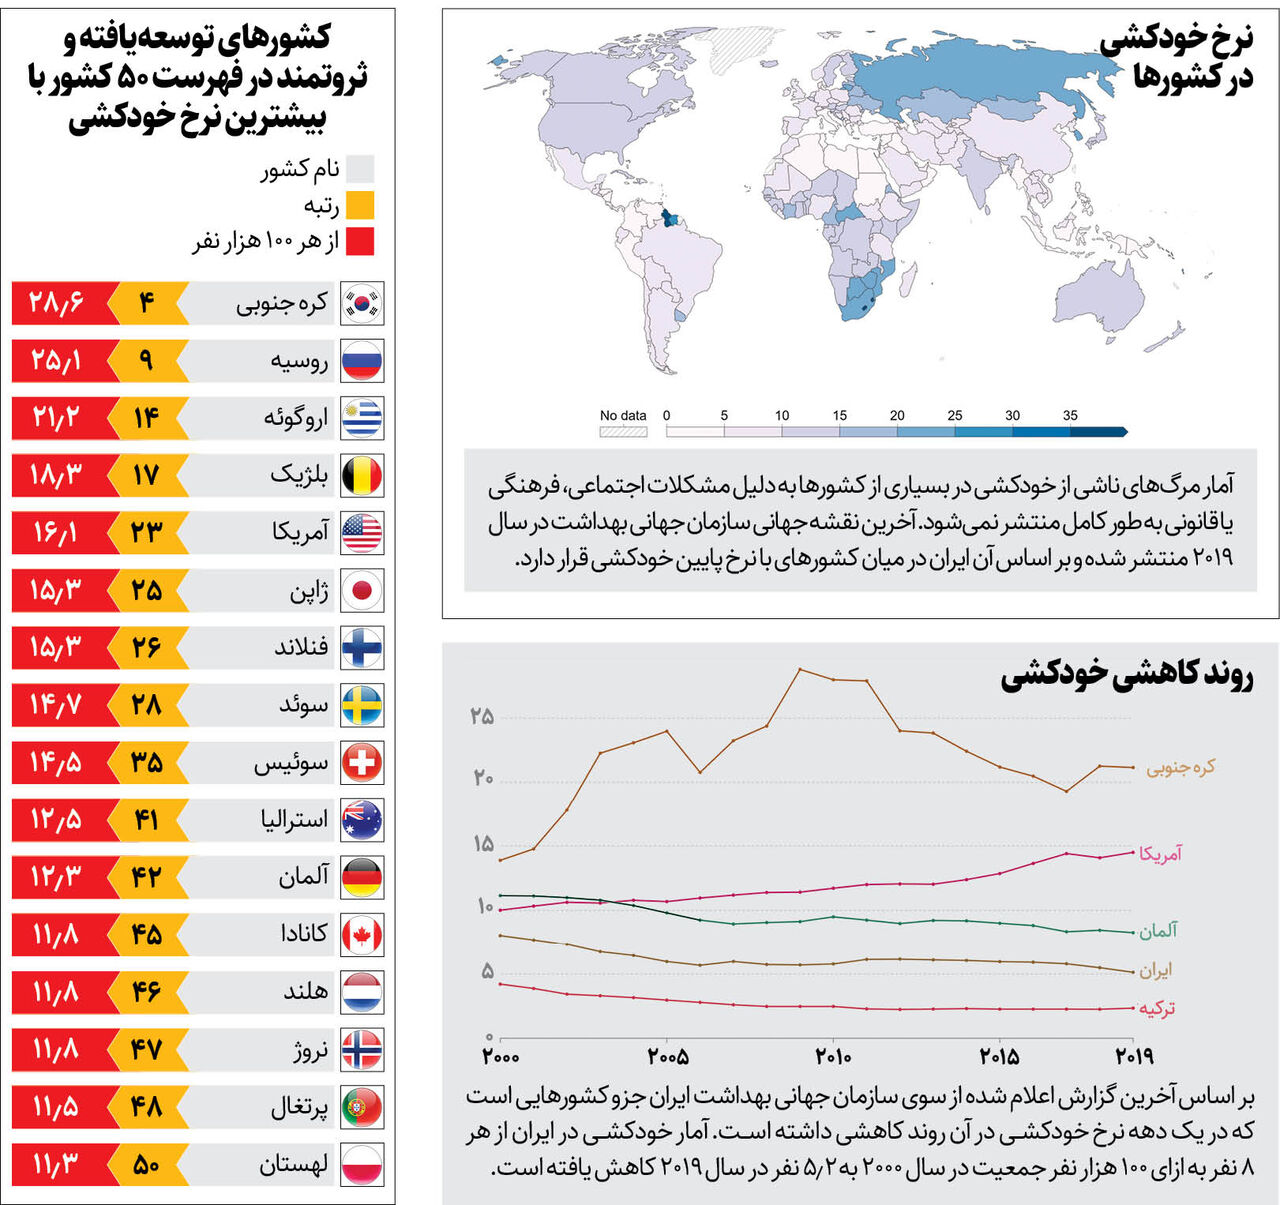 ایران بیشترین افزایش مرگ ناشی از خودکشی در میان کشورهای اسلامی را داشته است